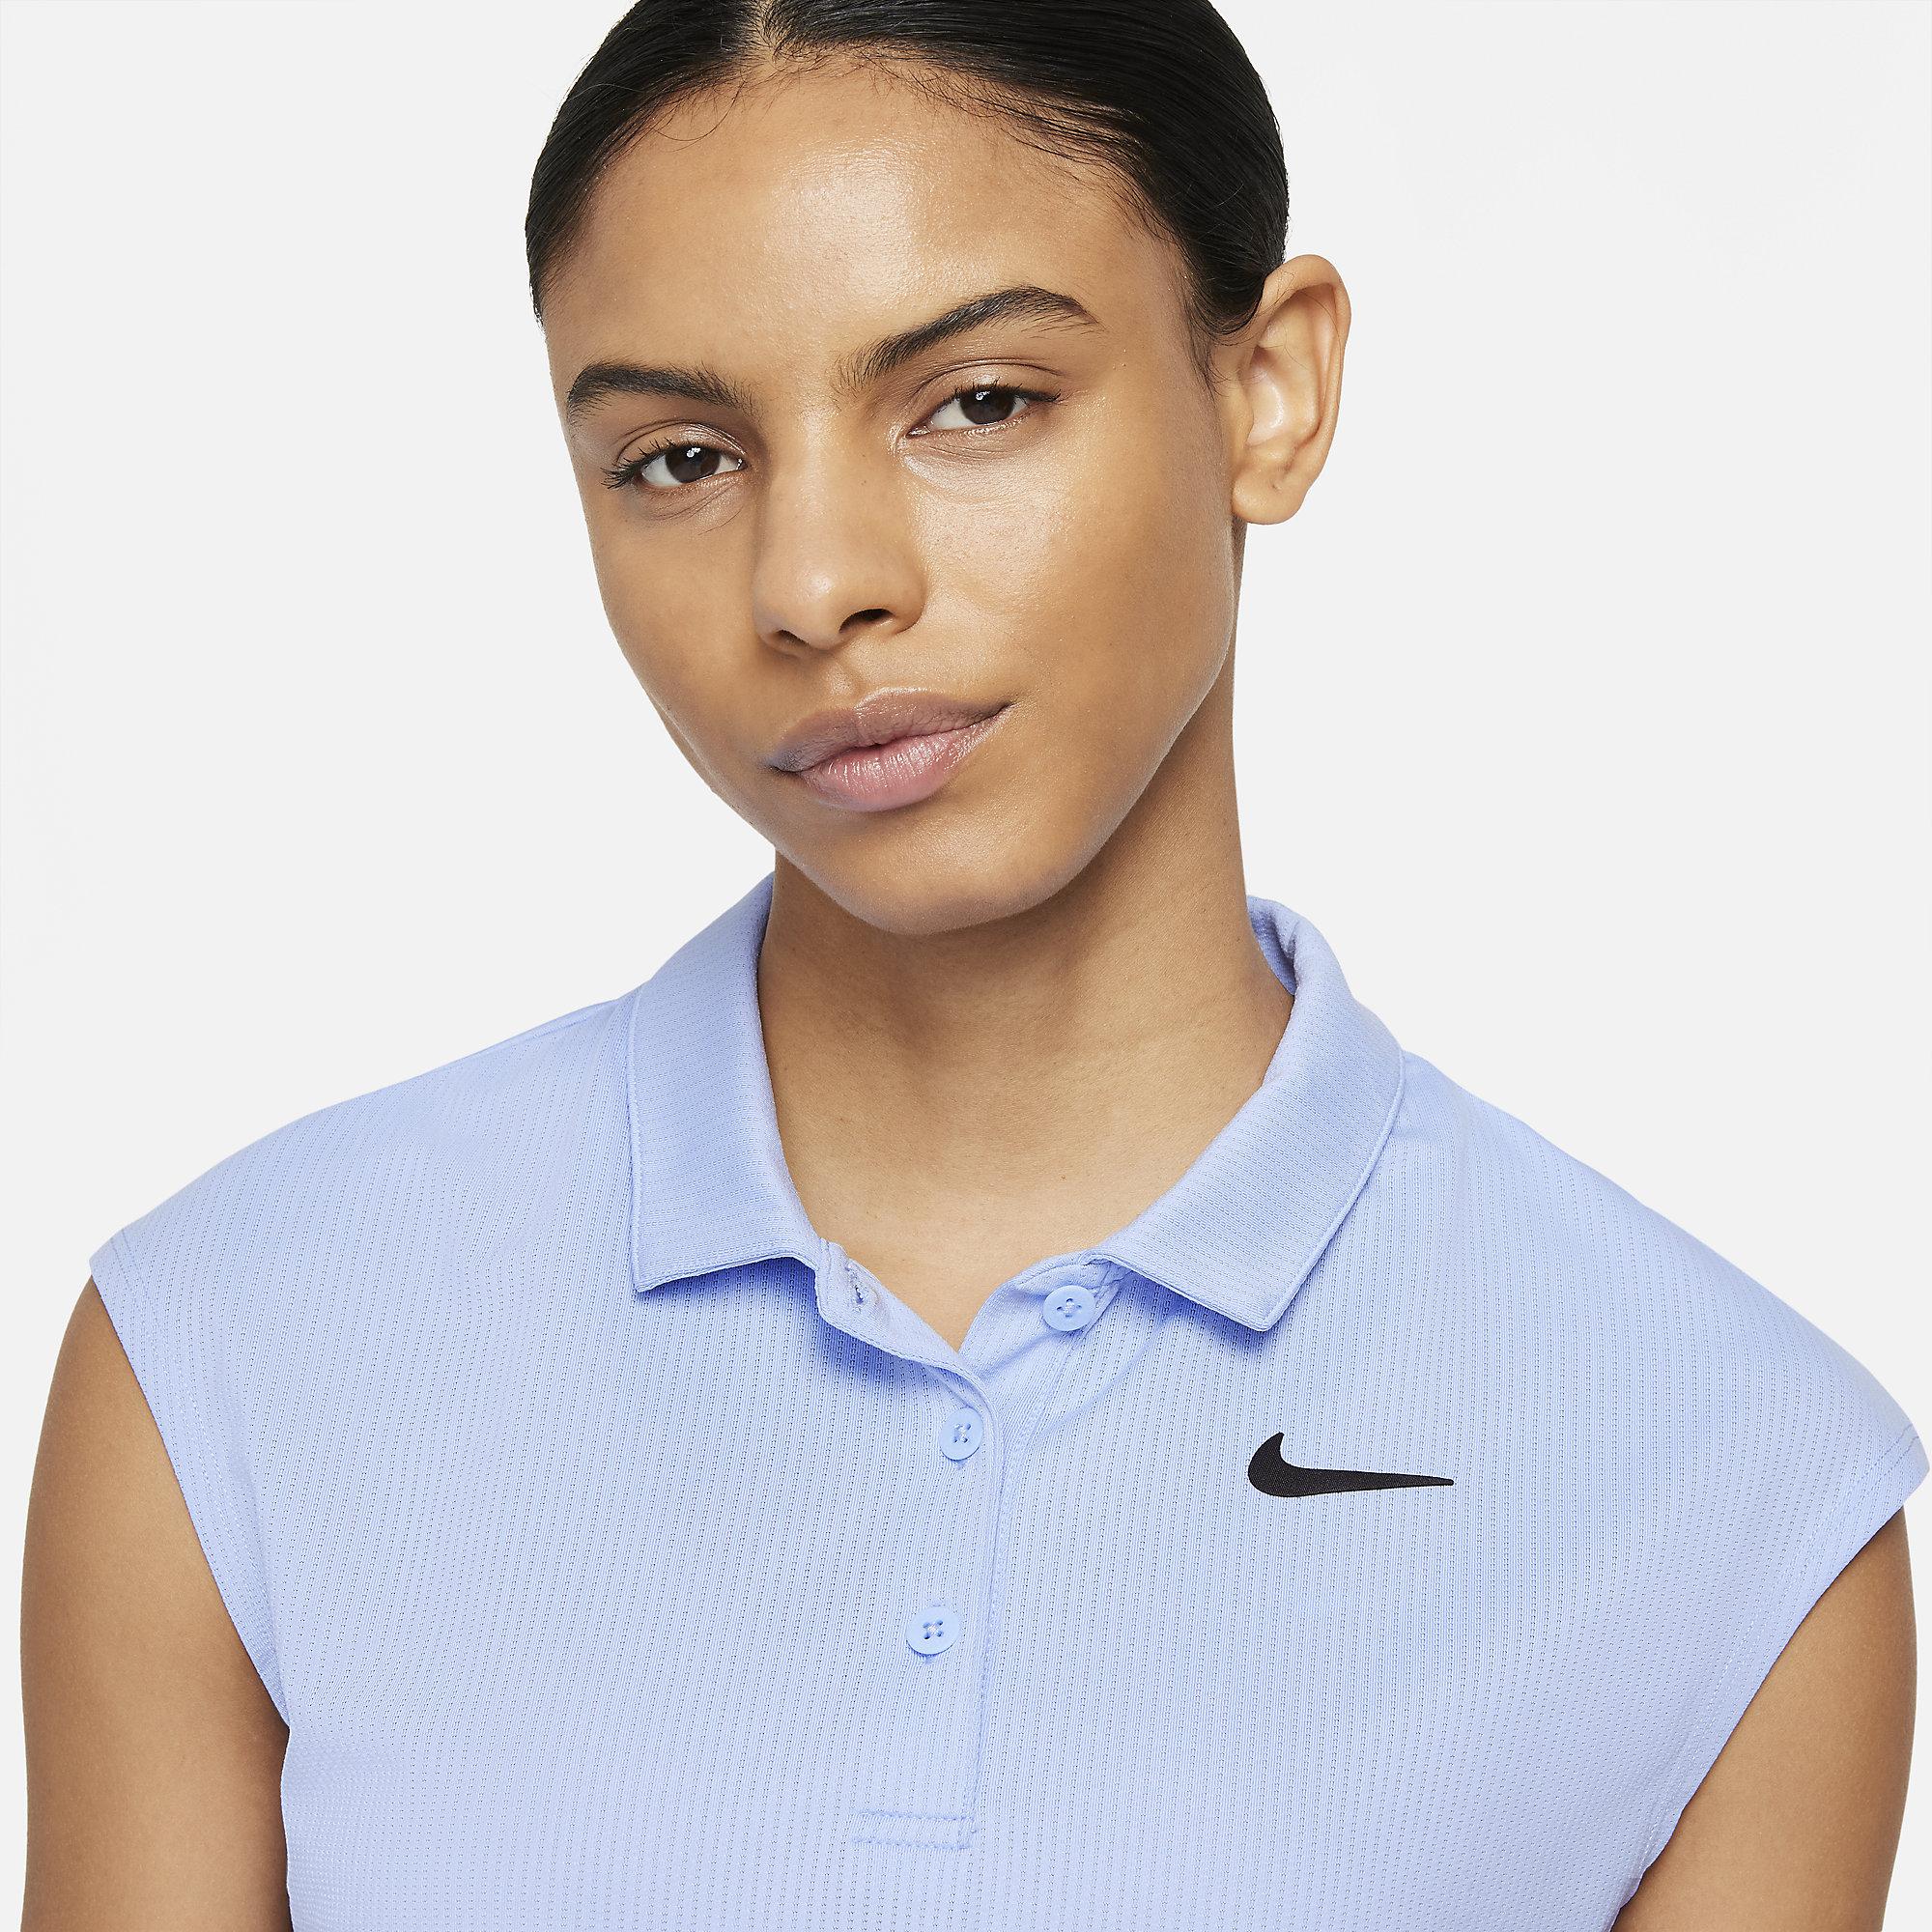 Nike Womens Victory Polo - Light Blue - Tennisnuts.com